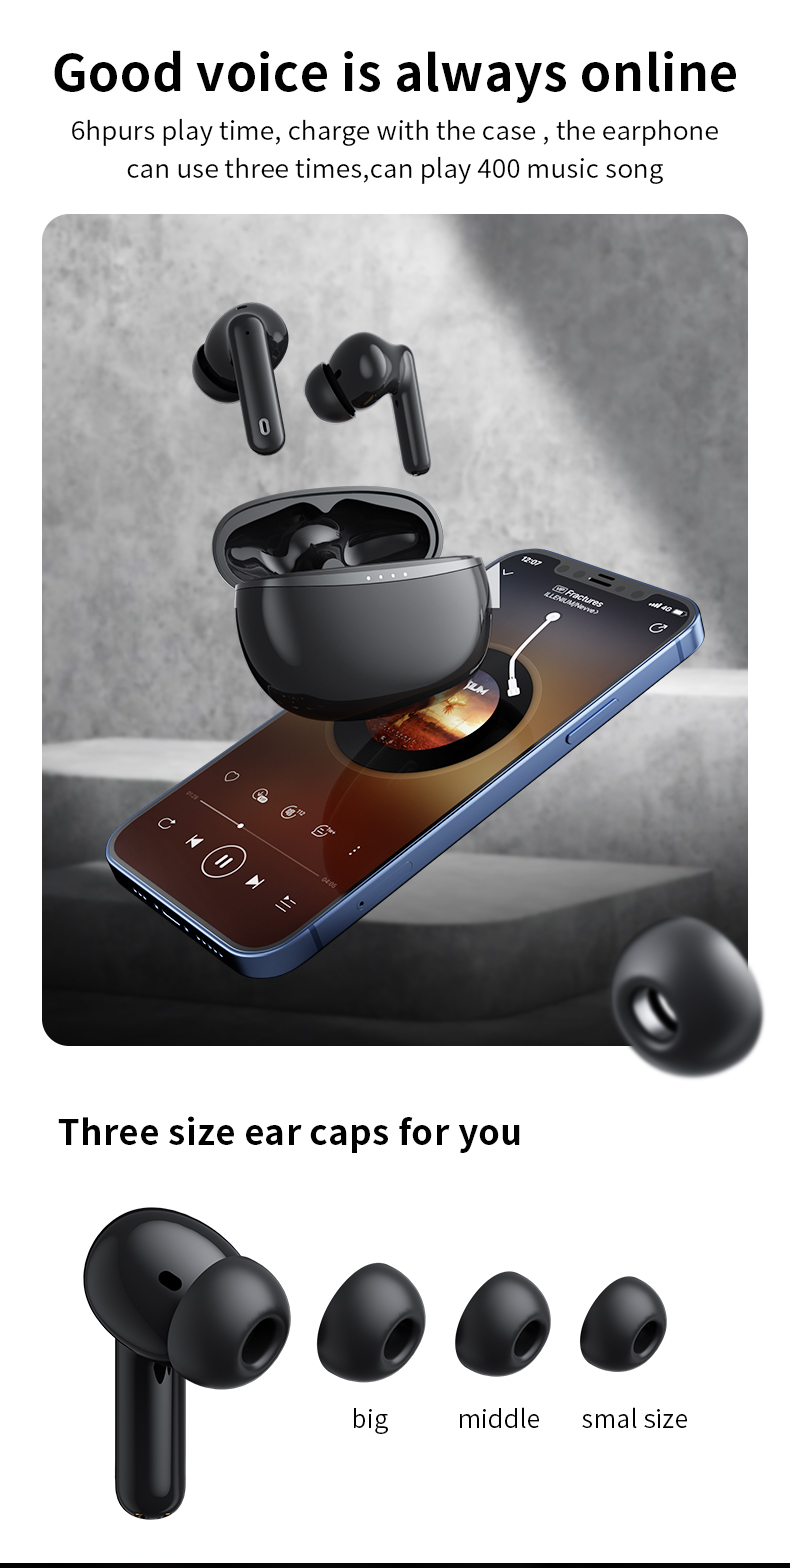 China Strength Sound Factory, los mejores auriculares para juegos, venta directa de fábrica, mini auriculares inalámbricos BJBJ A50 Pro